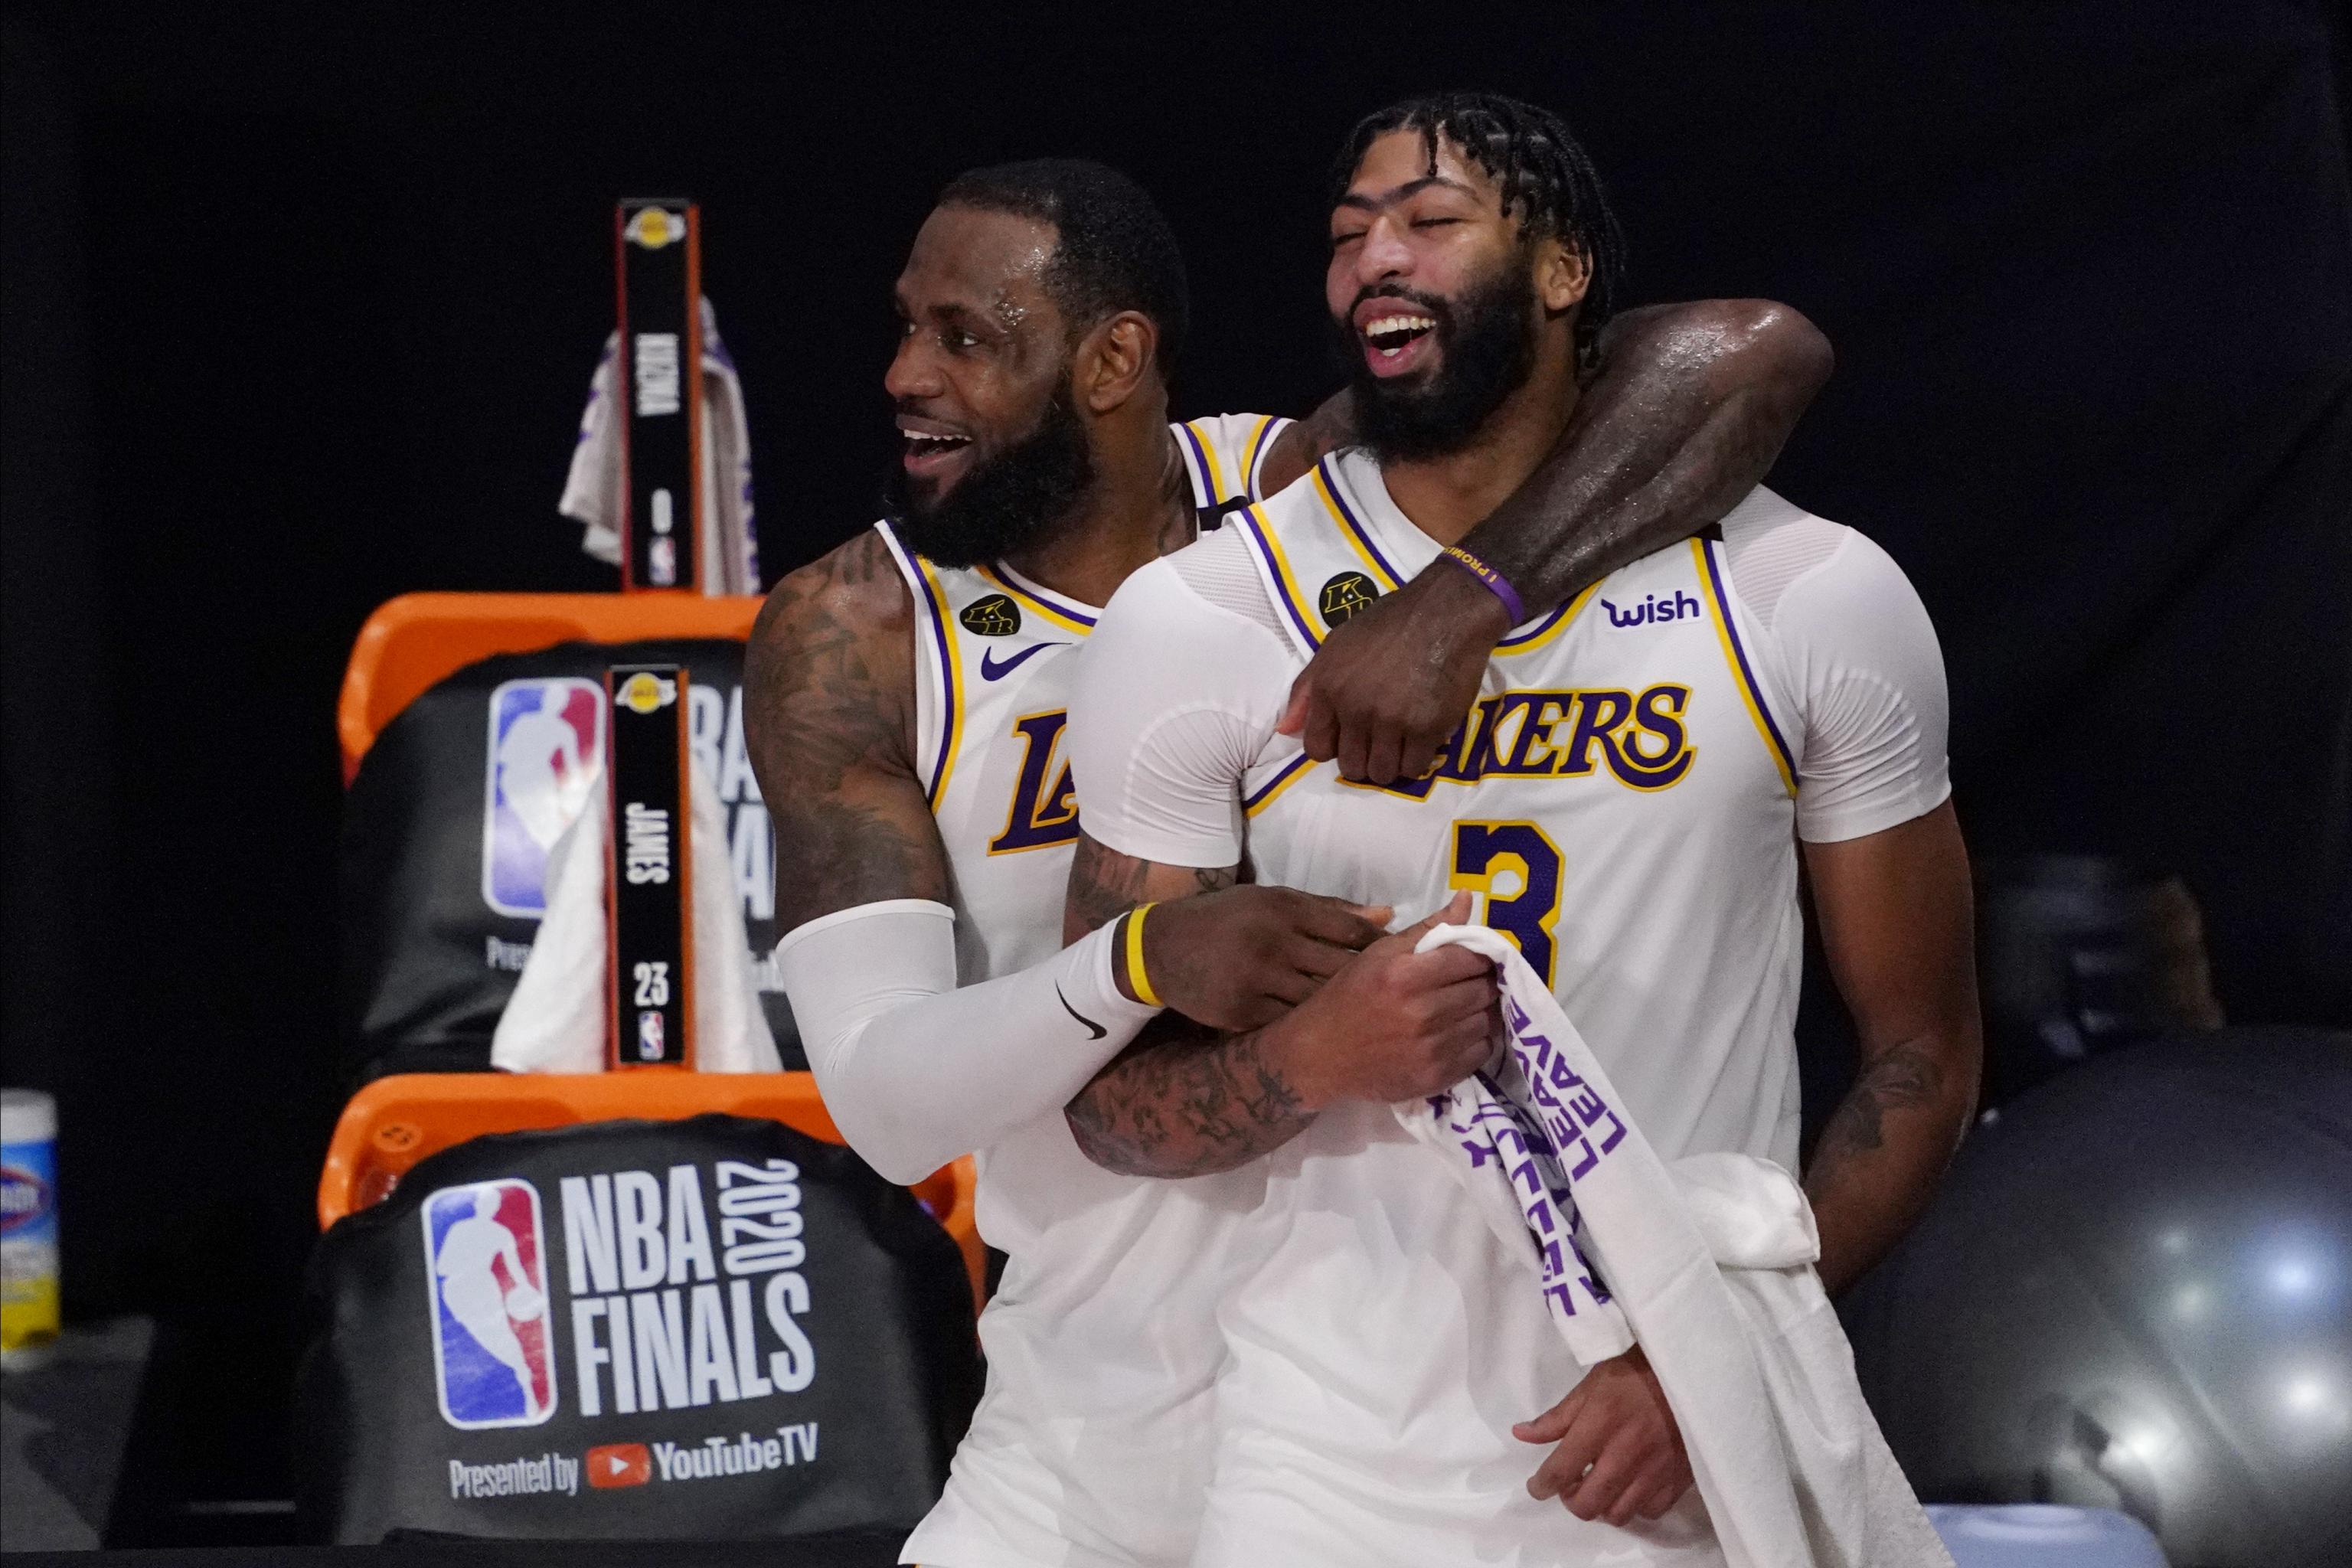 Tiếp nối LeBron James, Anthony Davis cam kết gắn bó lâu dài với Lakers